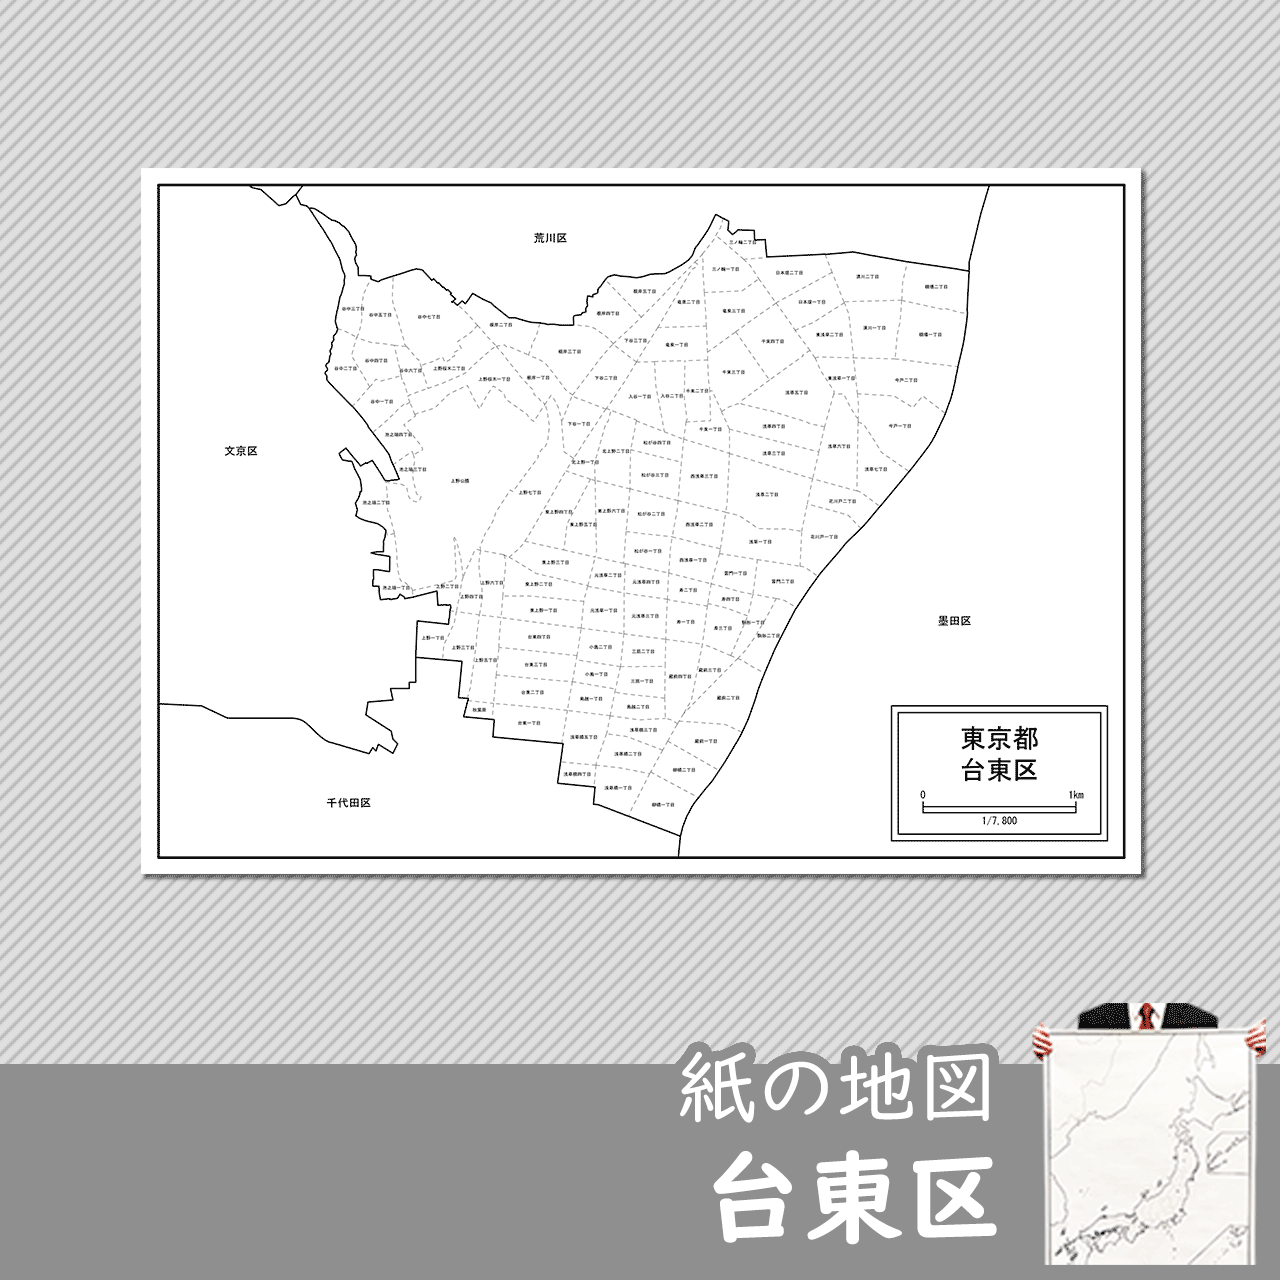 東京都台東区の紙の白地図のサムネイル